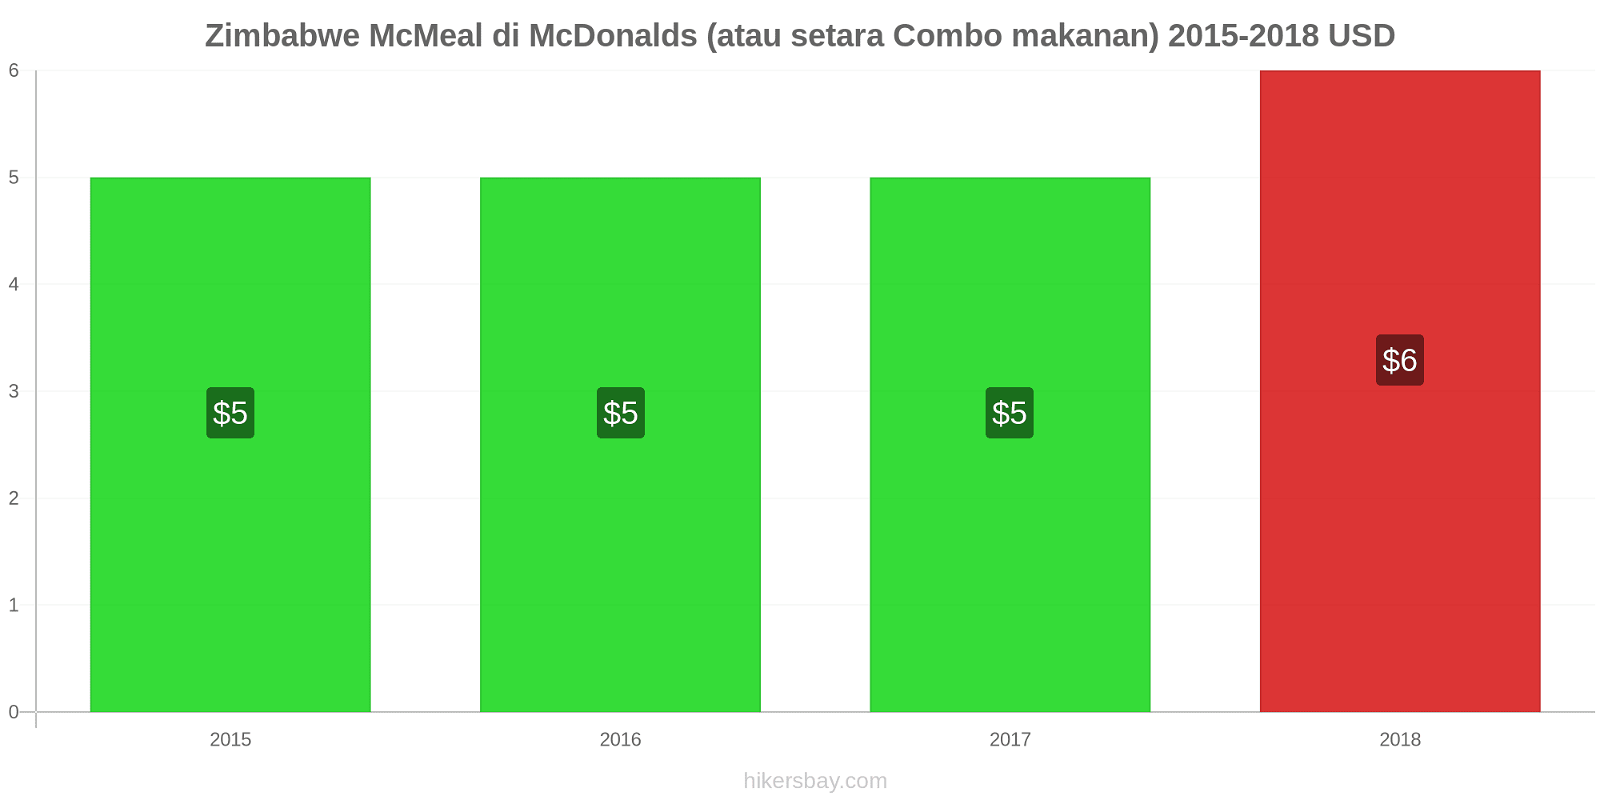 Zimbabwe perubahan harga McMeal di McDonalds (atau setara Combo makanan) hikersbay.com